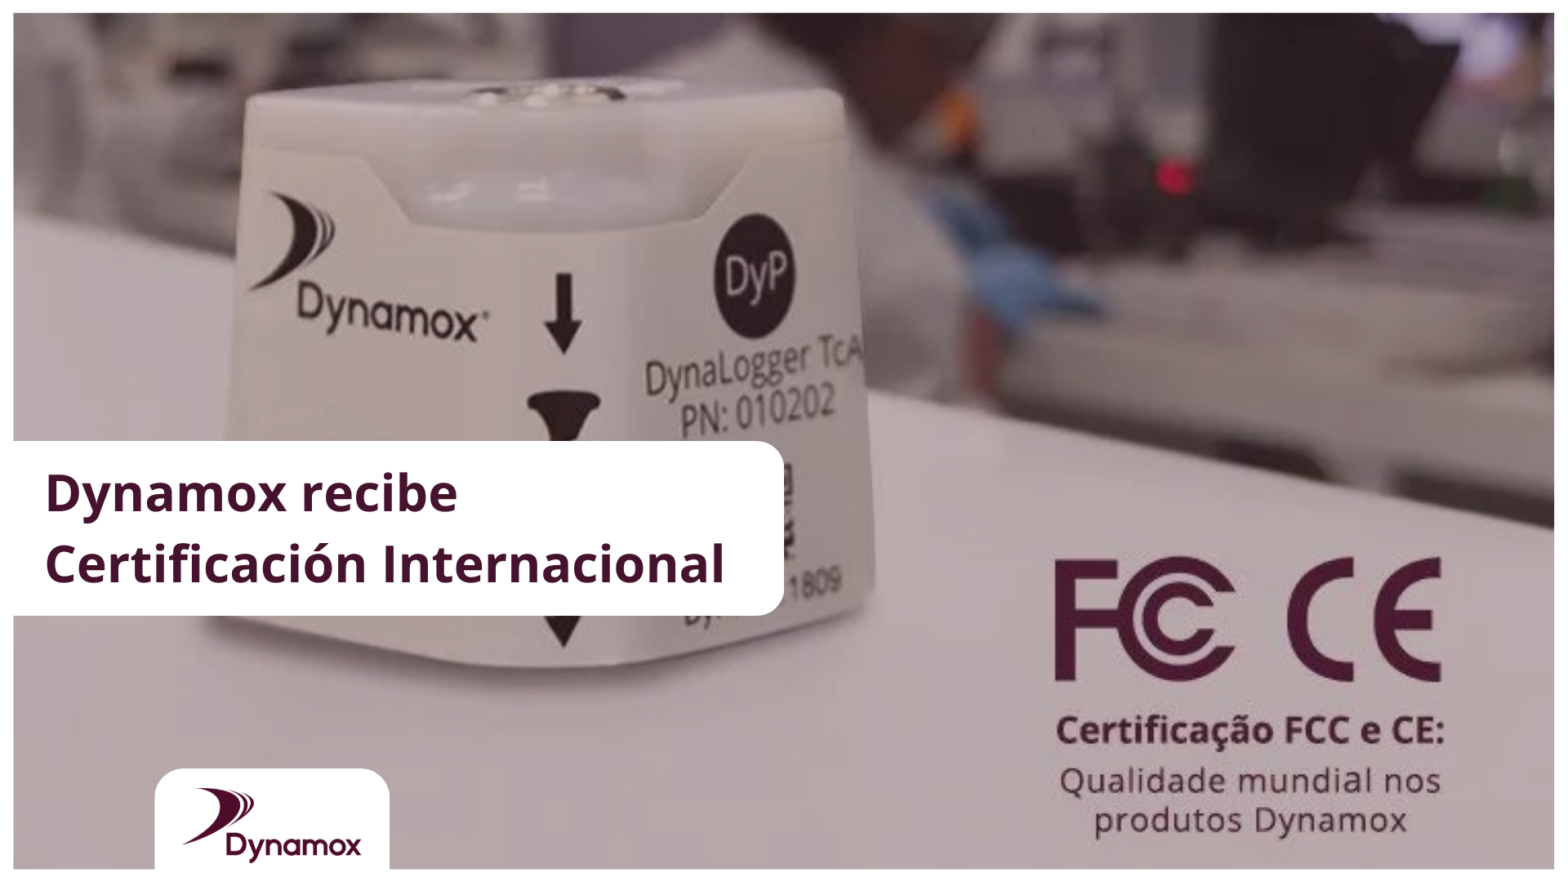 Dynamox recibe Certificación Internacional